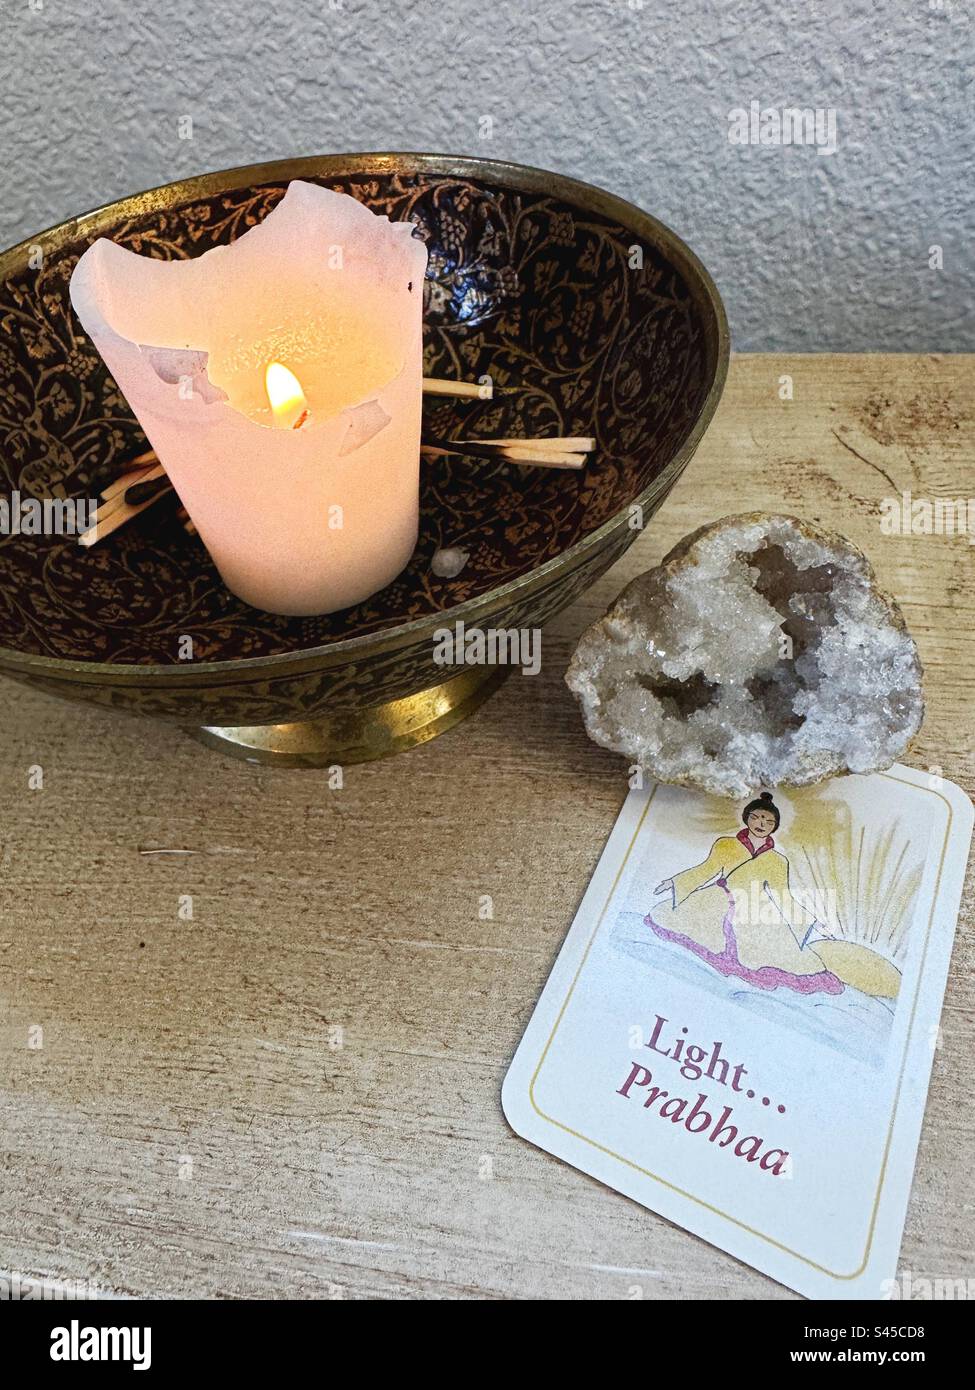 Eine Kerze neben einer Meditationskarte mit dem Wort "Licht". Stockfoto